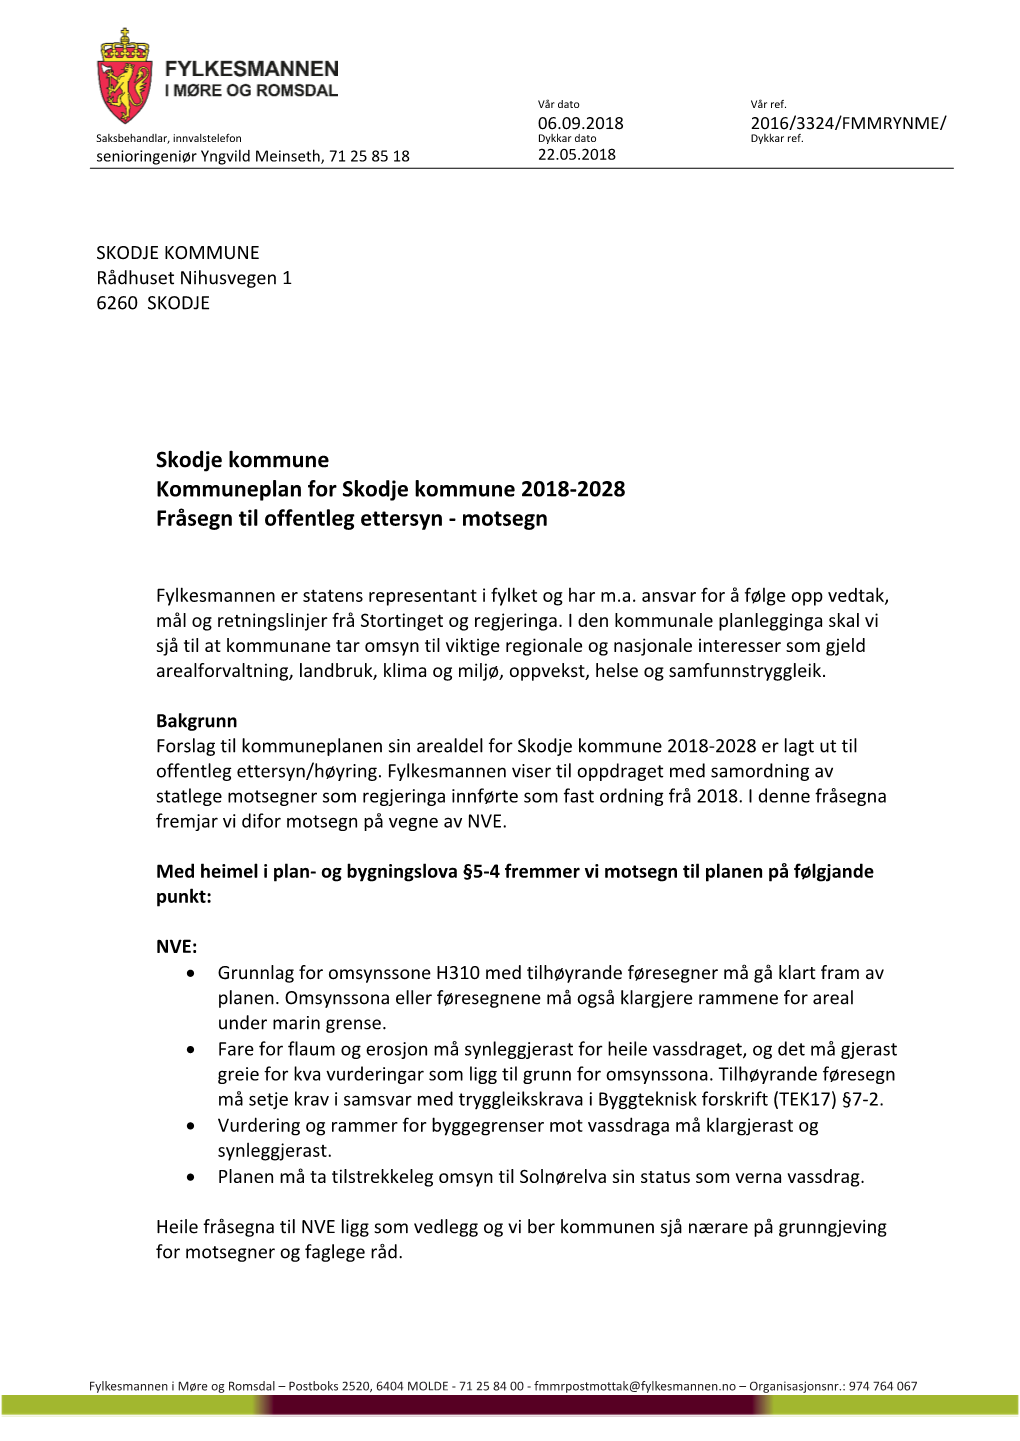 Skodje Kommune Kommuneplan for Skodje Kommune 2018-2028 Fråsegn Til Offentleg Ettersyn - Motsegn